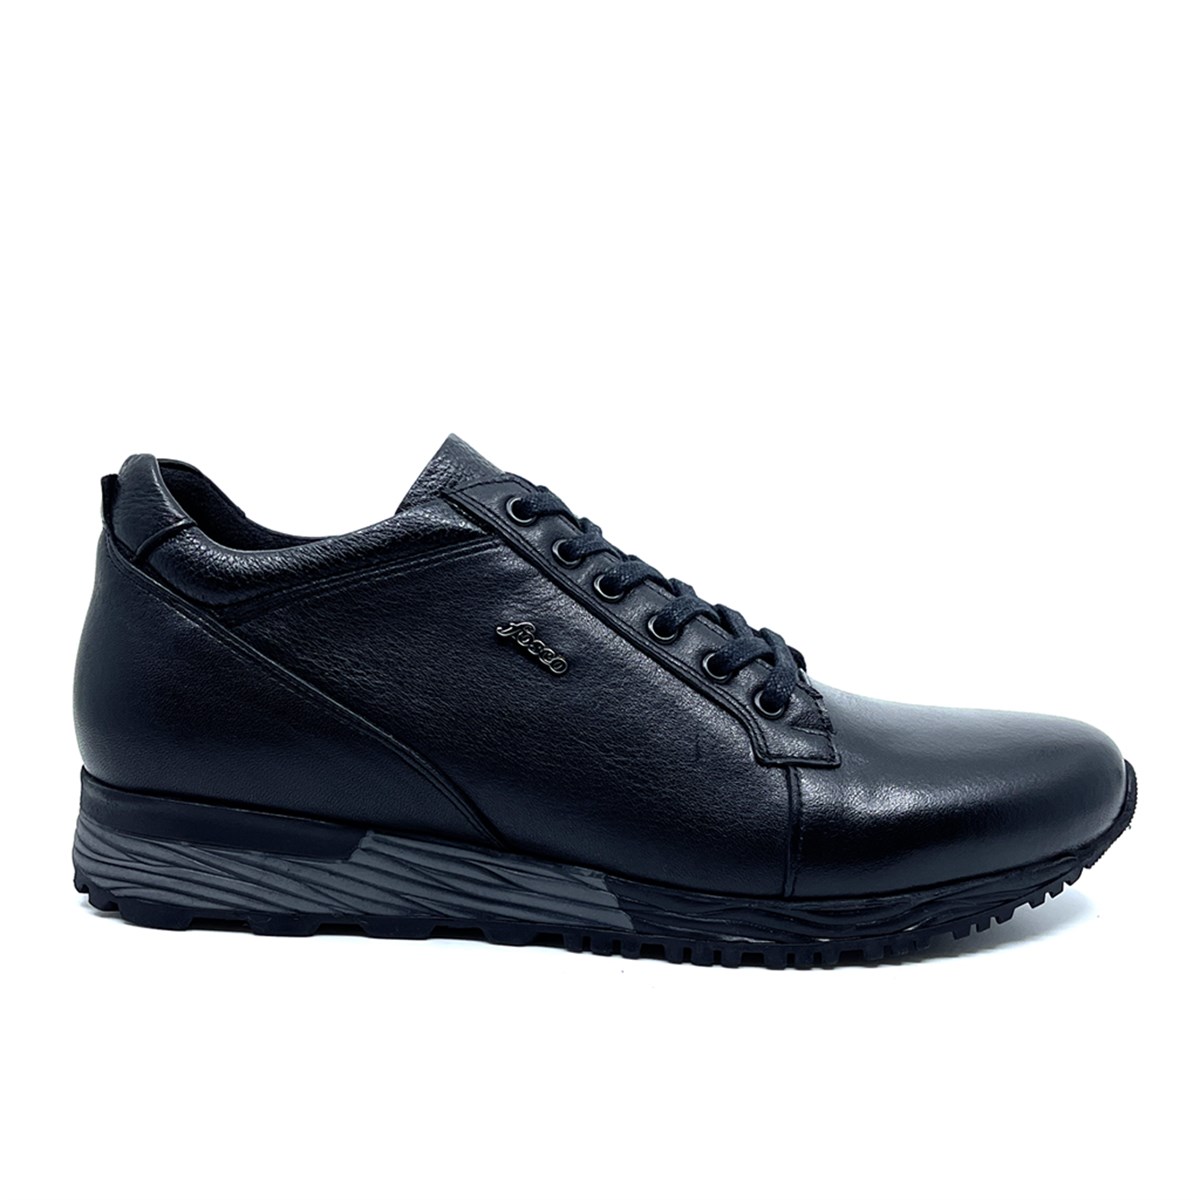 Erkek Hakiki Deri Sneakers Sıcak Astarlı Kışlık Ayakkabı, Renk: Siyah, Beden: 40